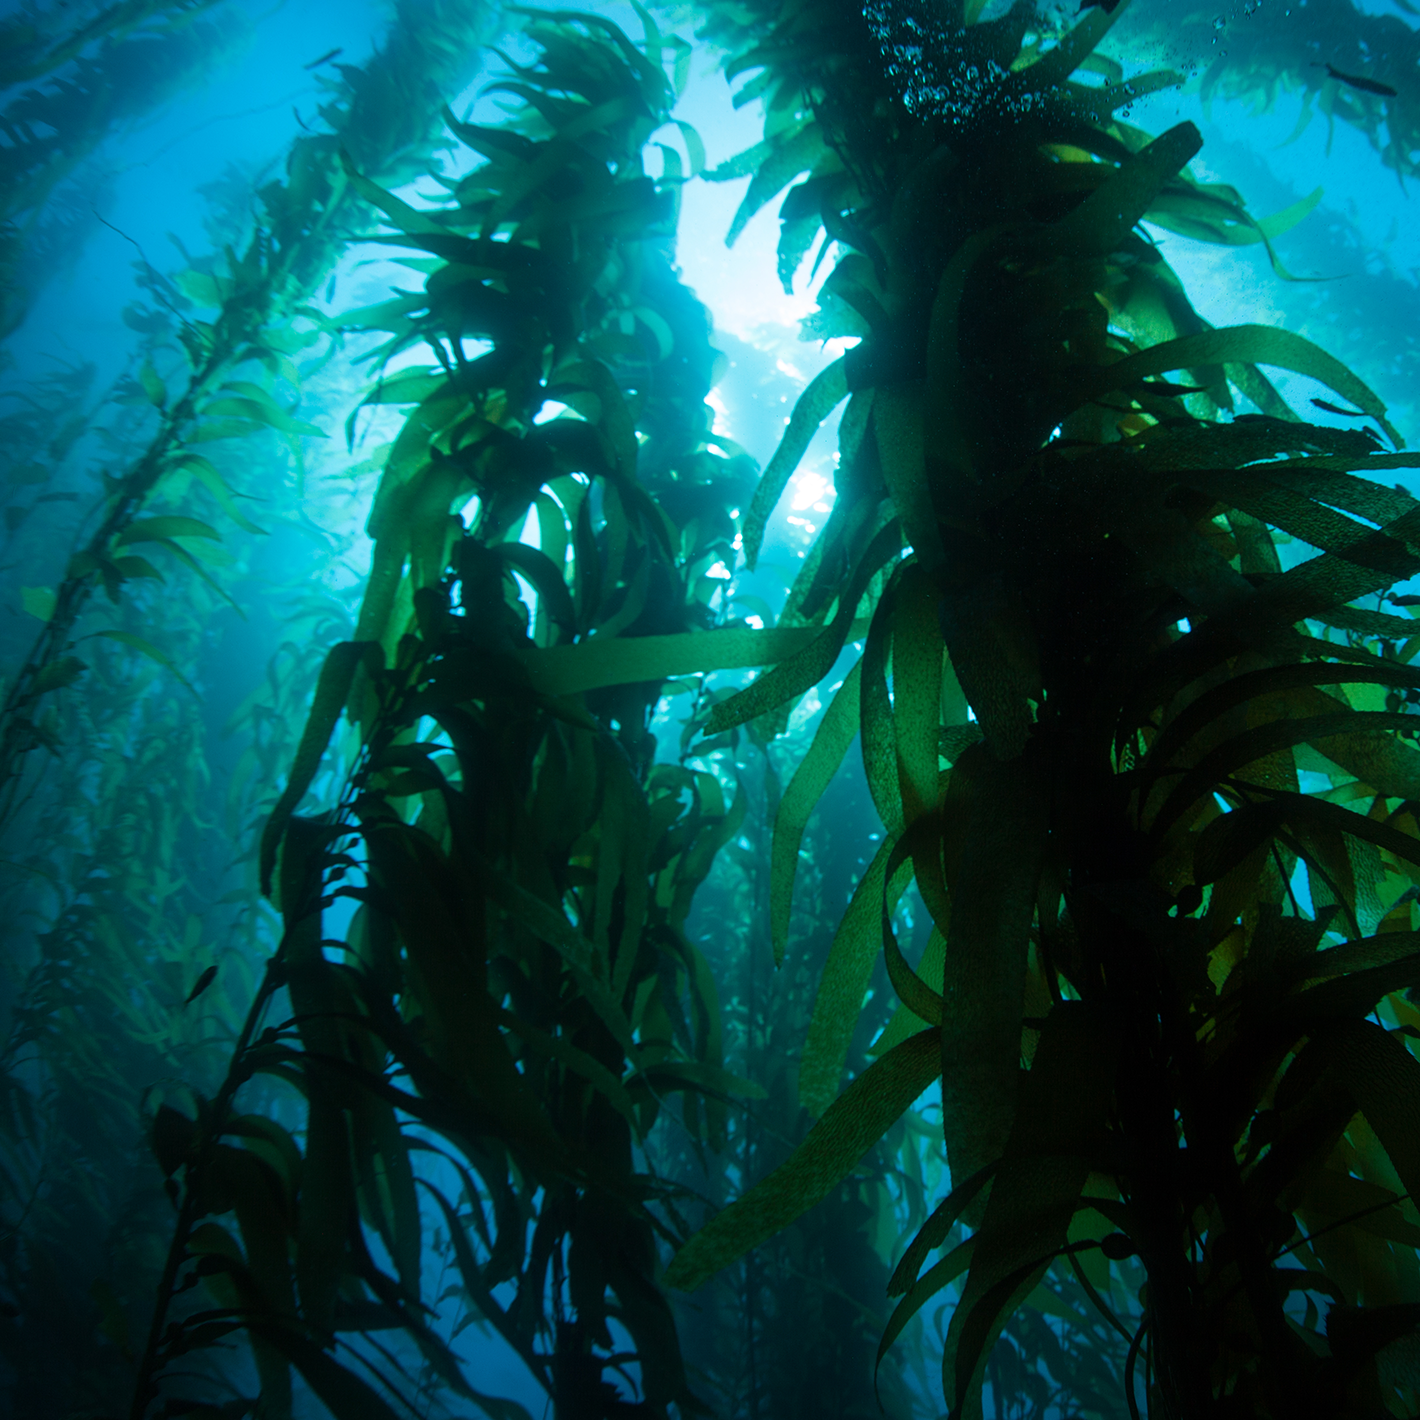 A kelp forest in the open ocean.